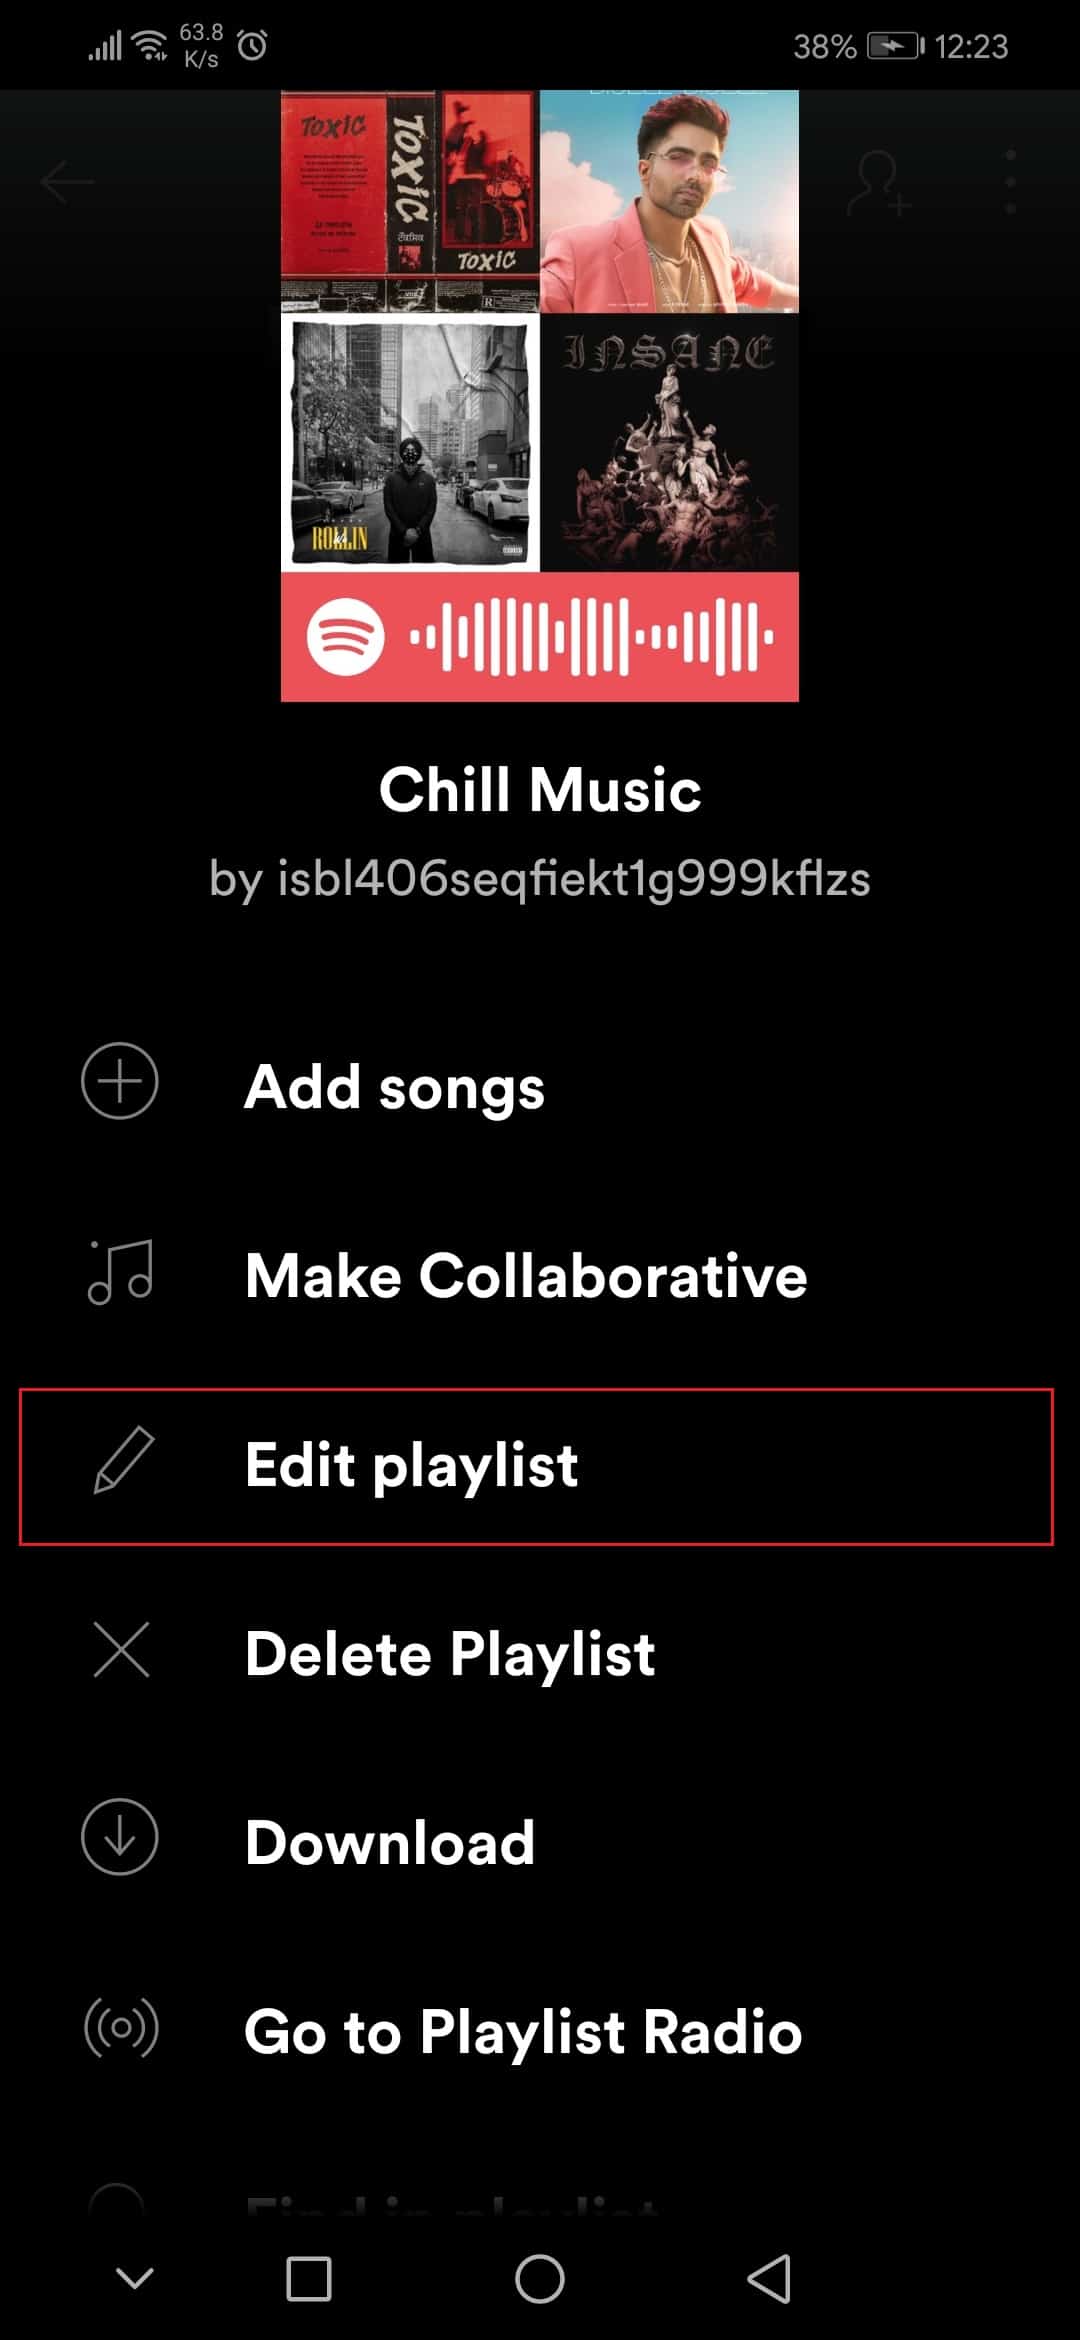 點擊 Spotify 應用 Honor Play Android 中的編輯播放列表選項